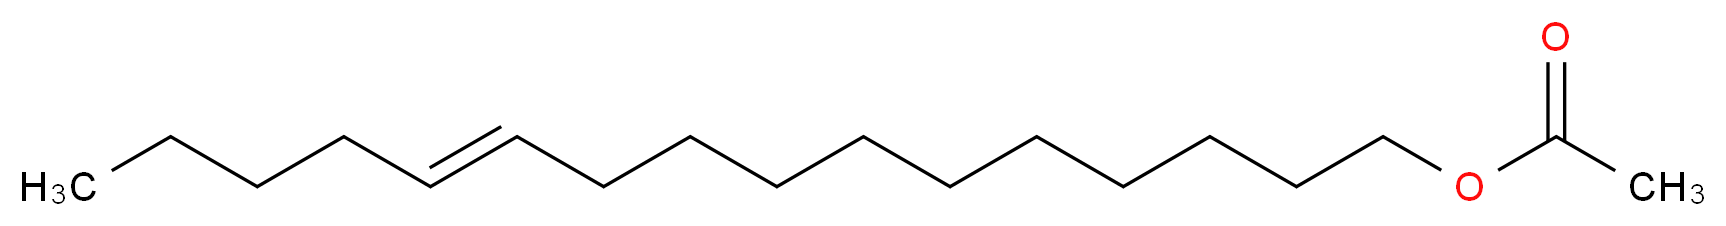 (E)-11-Hexadecen-1-ol acetate_Molecular_structure_CAS_56218-72-5)